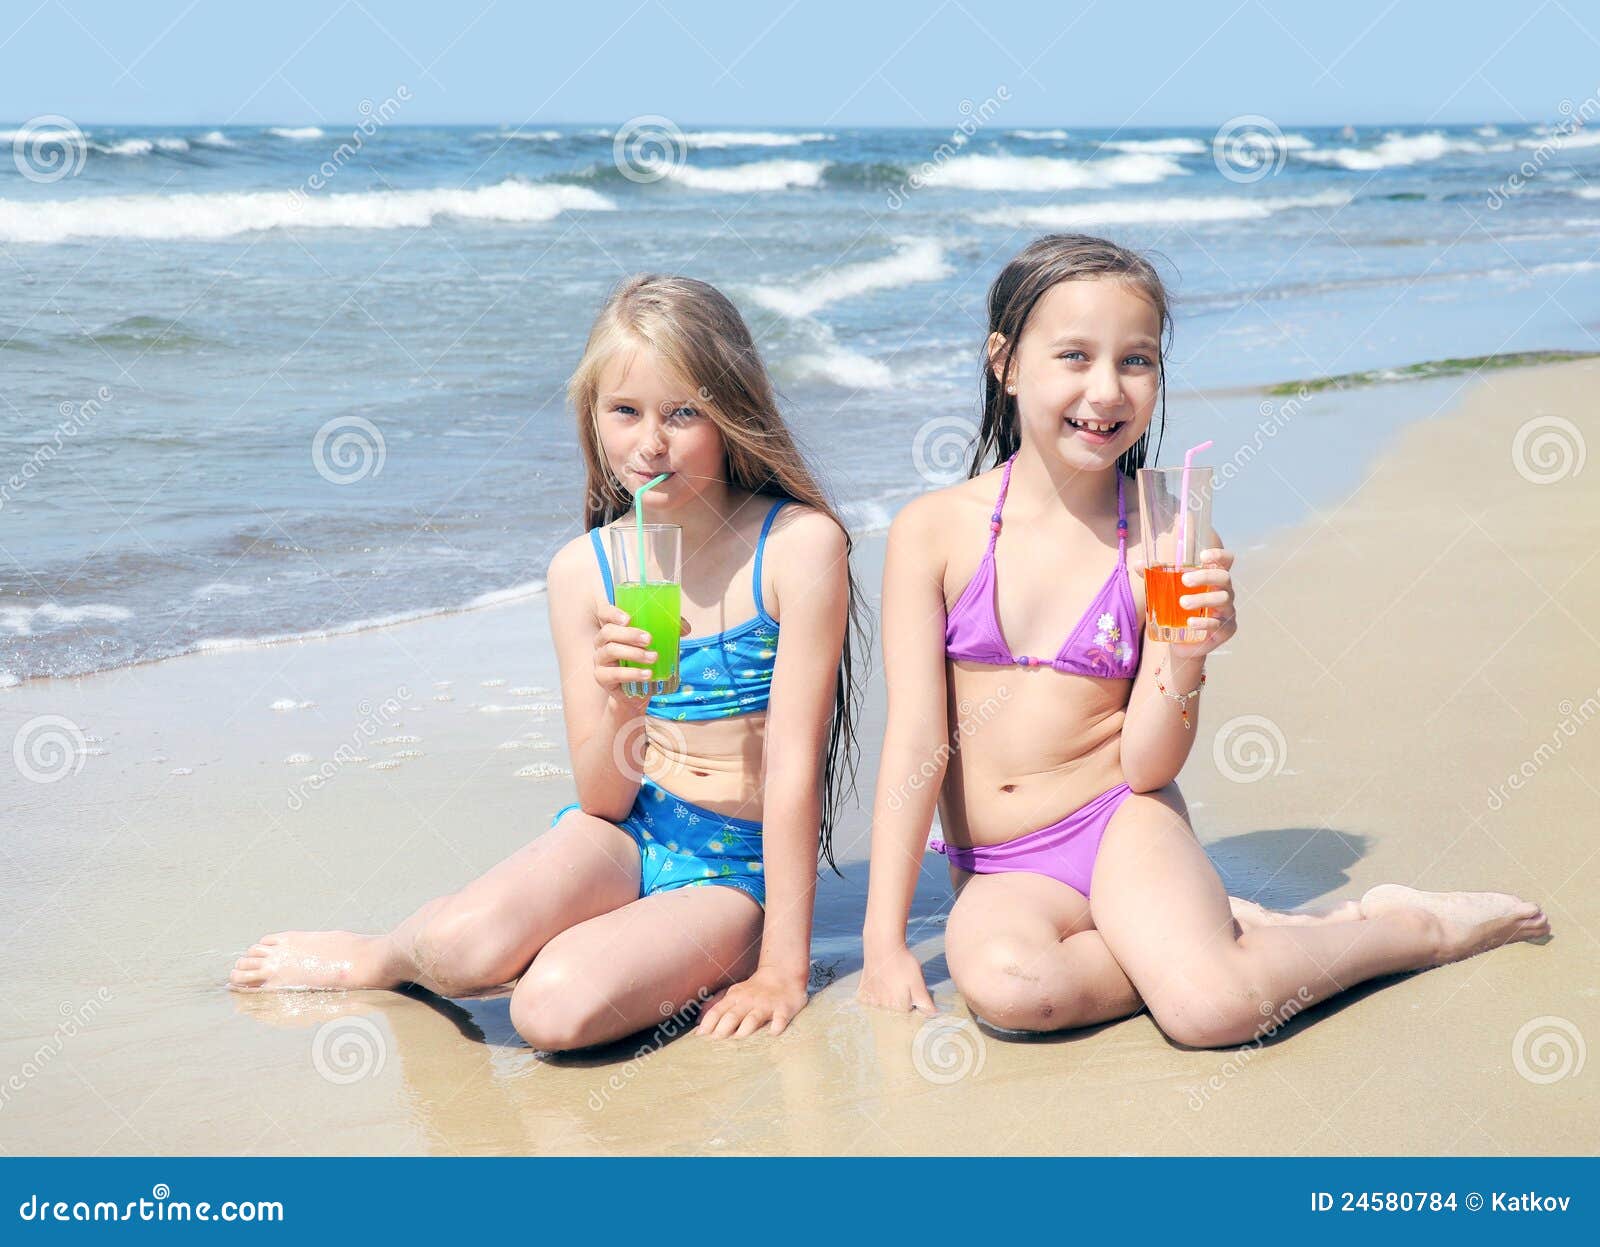 Две маленькие девочки на пляже